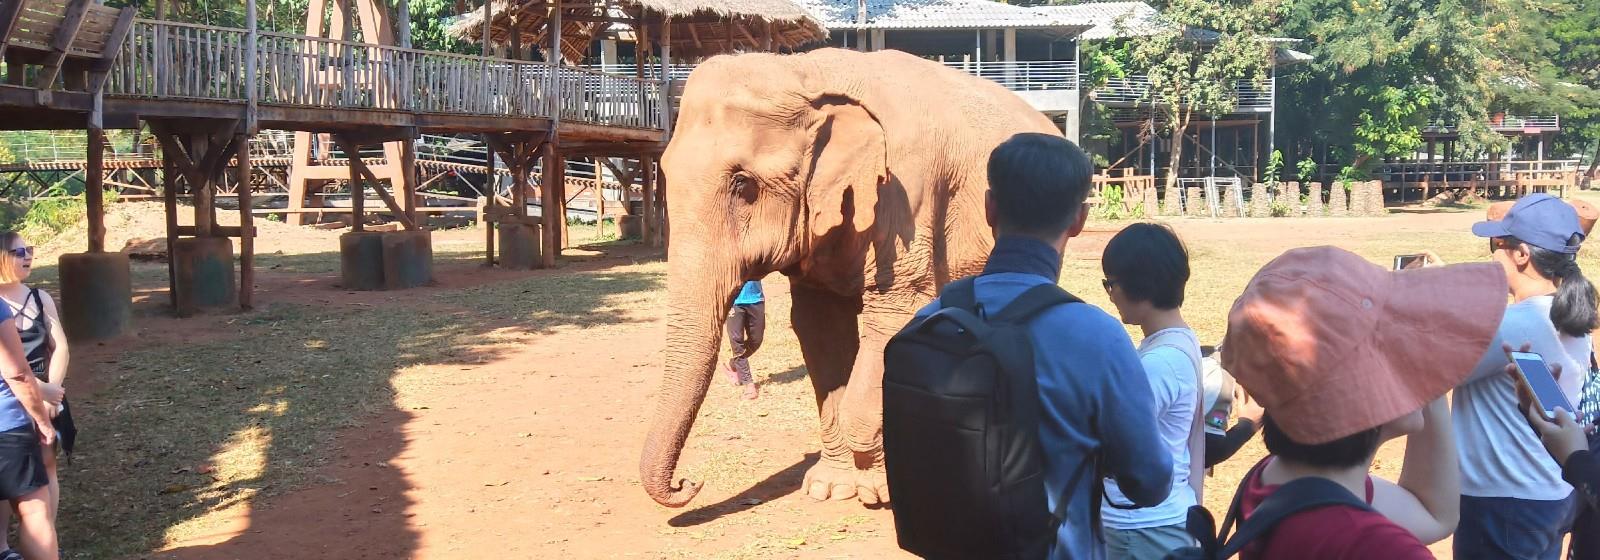 亞洲動物園教育者研討會 ── 動物園教育人員們的學習盛宴與泰國大象王國